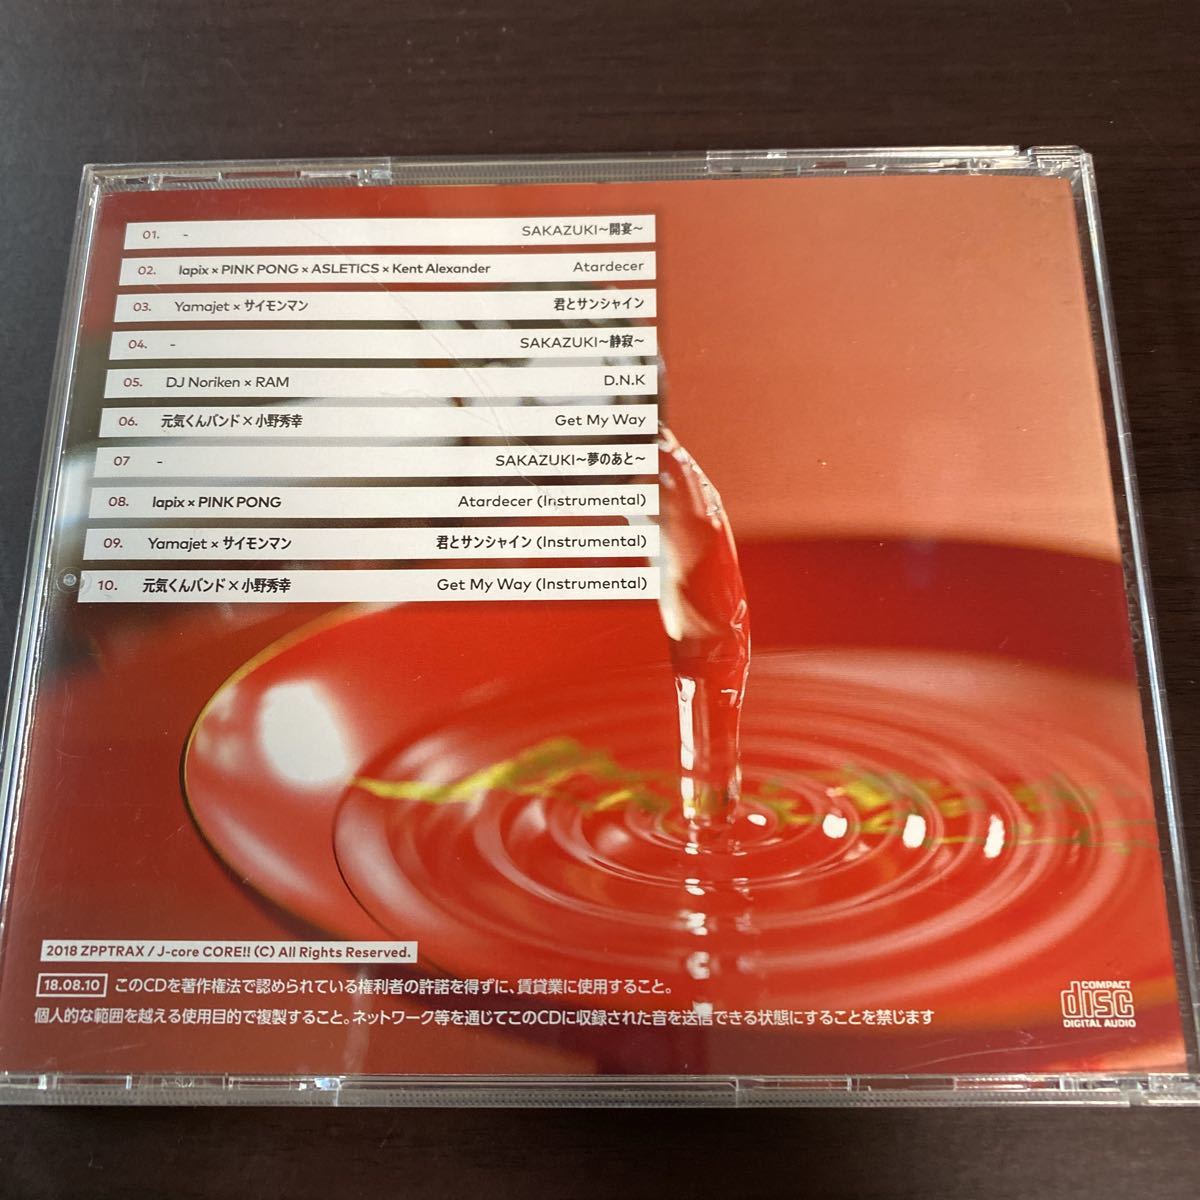 【同人音楽CD】ZPPTRAX / 盃SAKAZUKI ZPPTRAX x J-core CORE!! ☆ ビートマニア 2DX beatmania IIDX CD